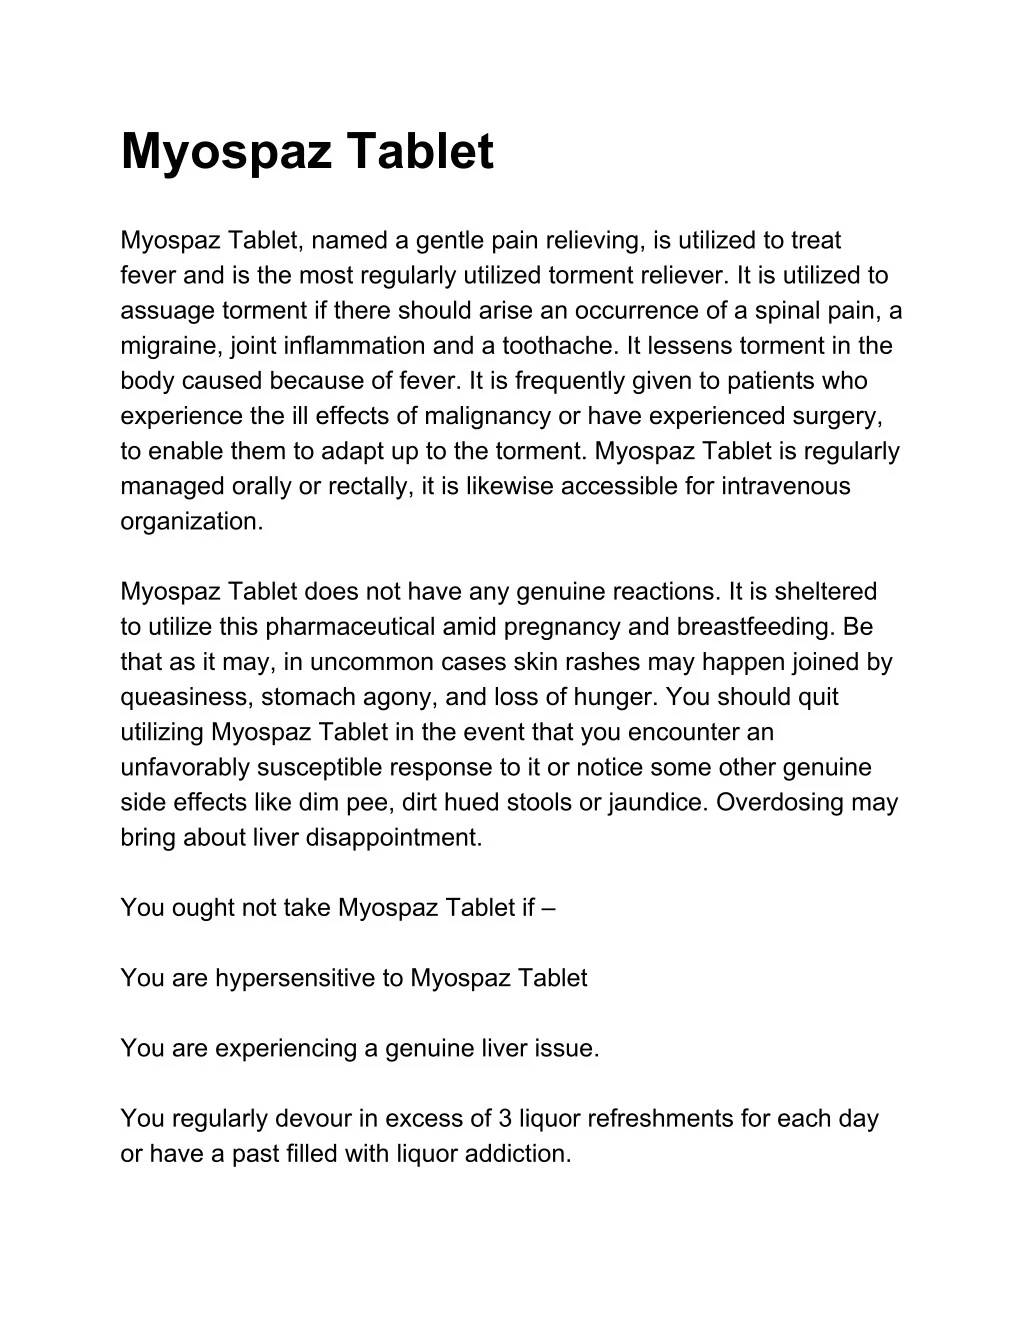 myospaz tablet myospaz tablet named a gentle pain